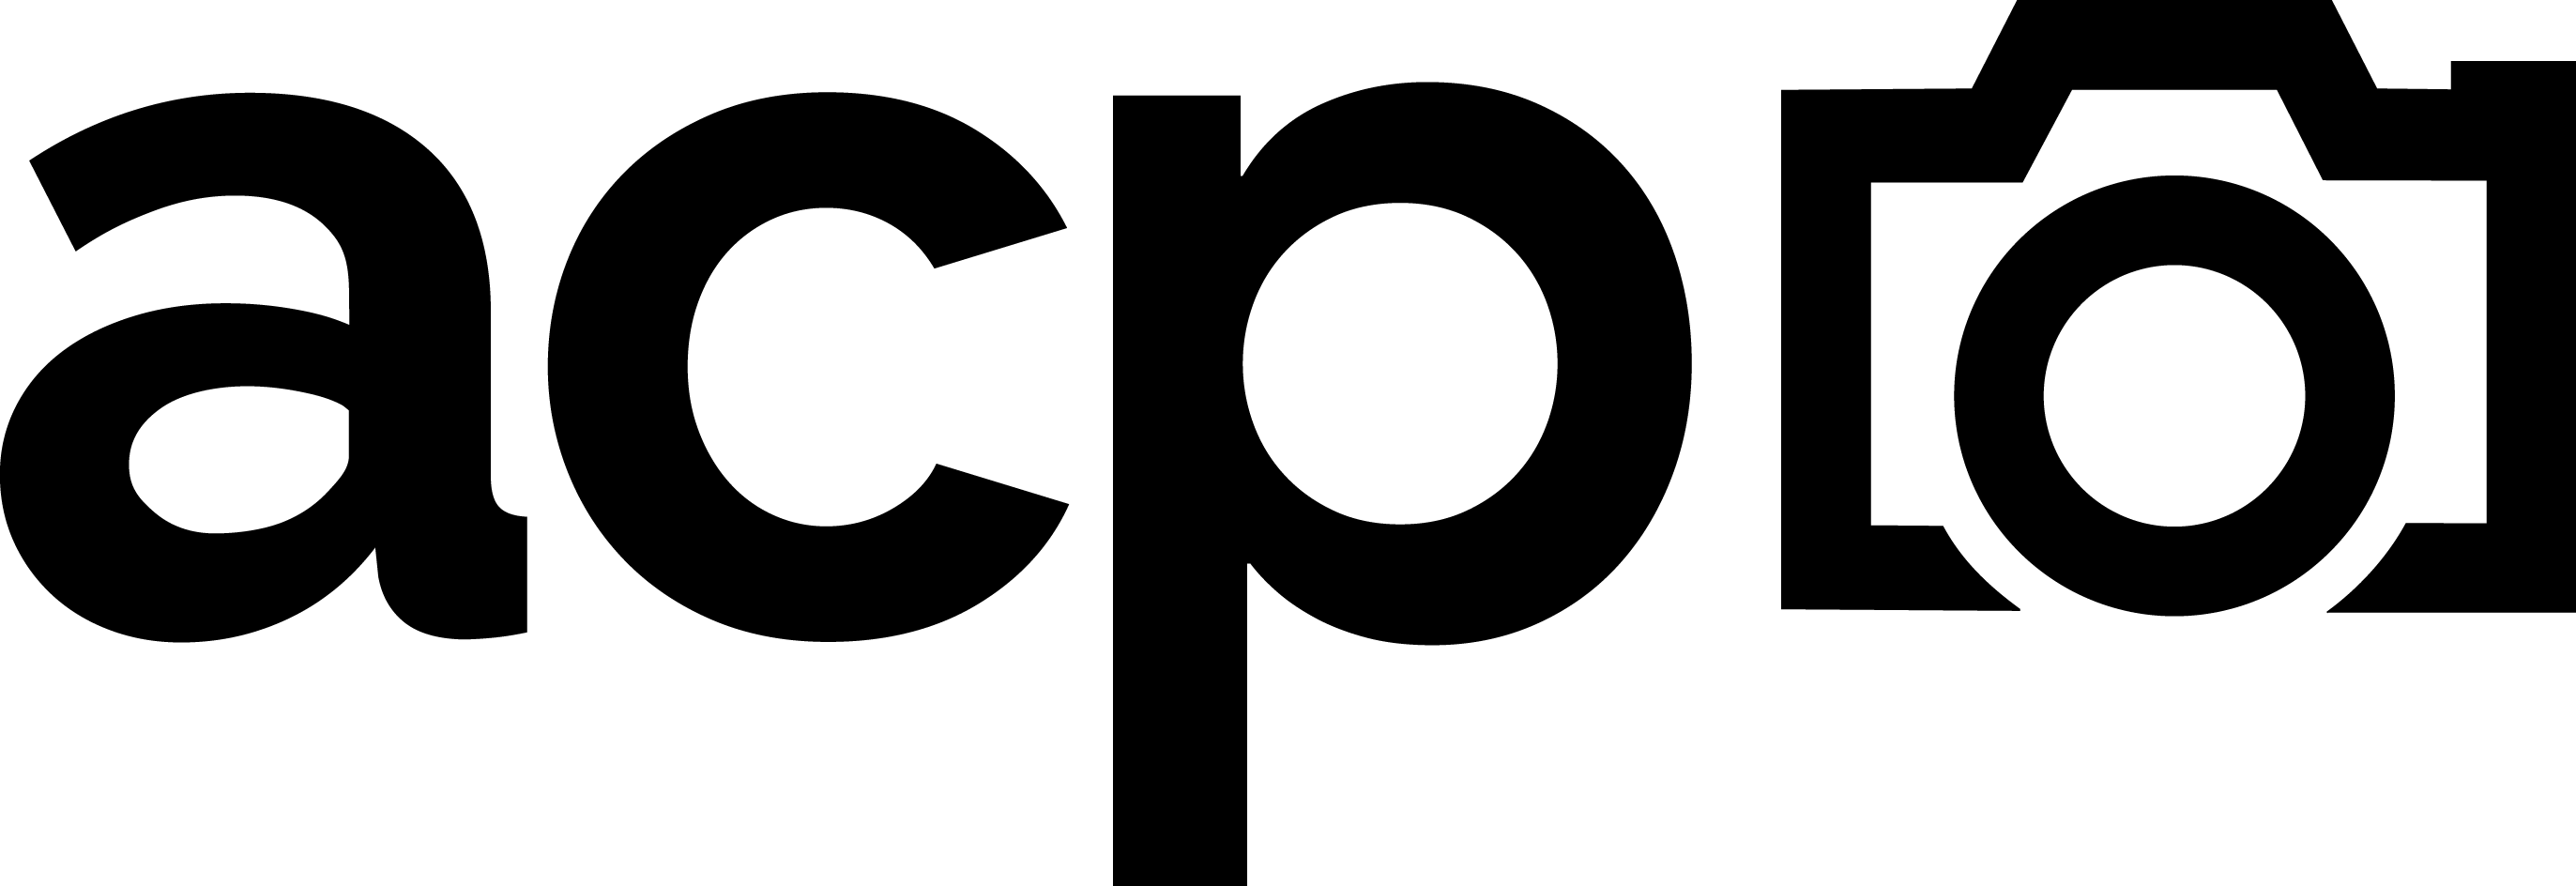 Atlanta Center for Photography logo